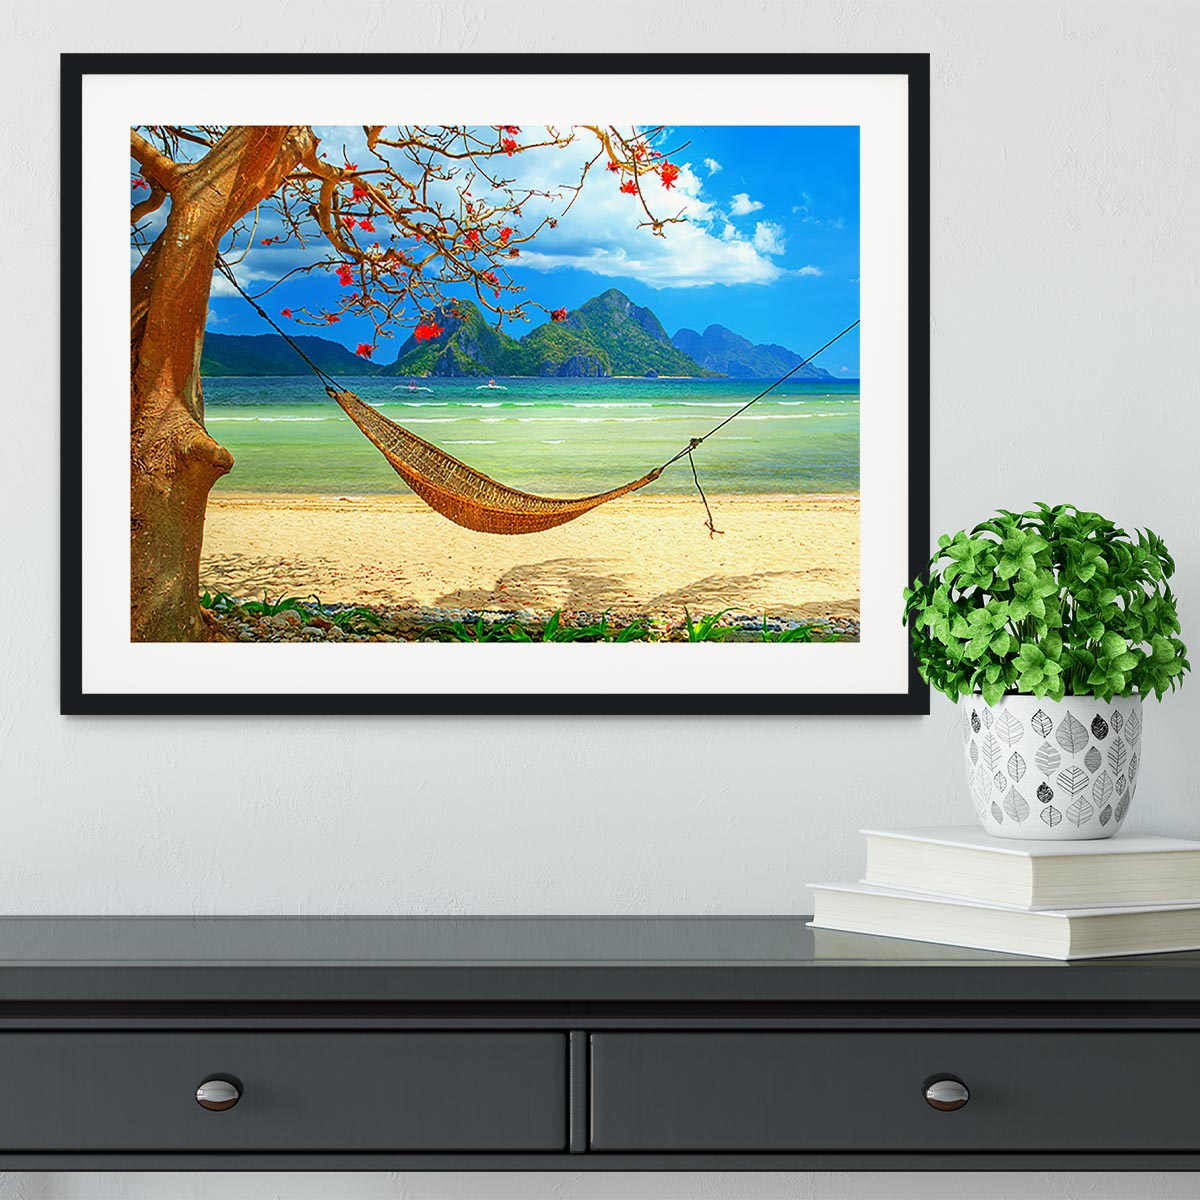 tropical beach scene with hammock Framed Print - Canvas Art Rocks - 1